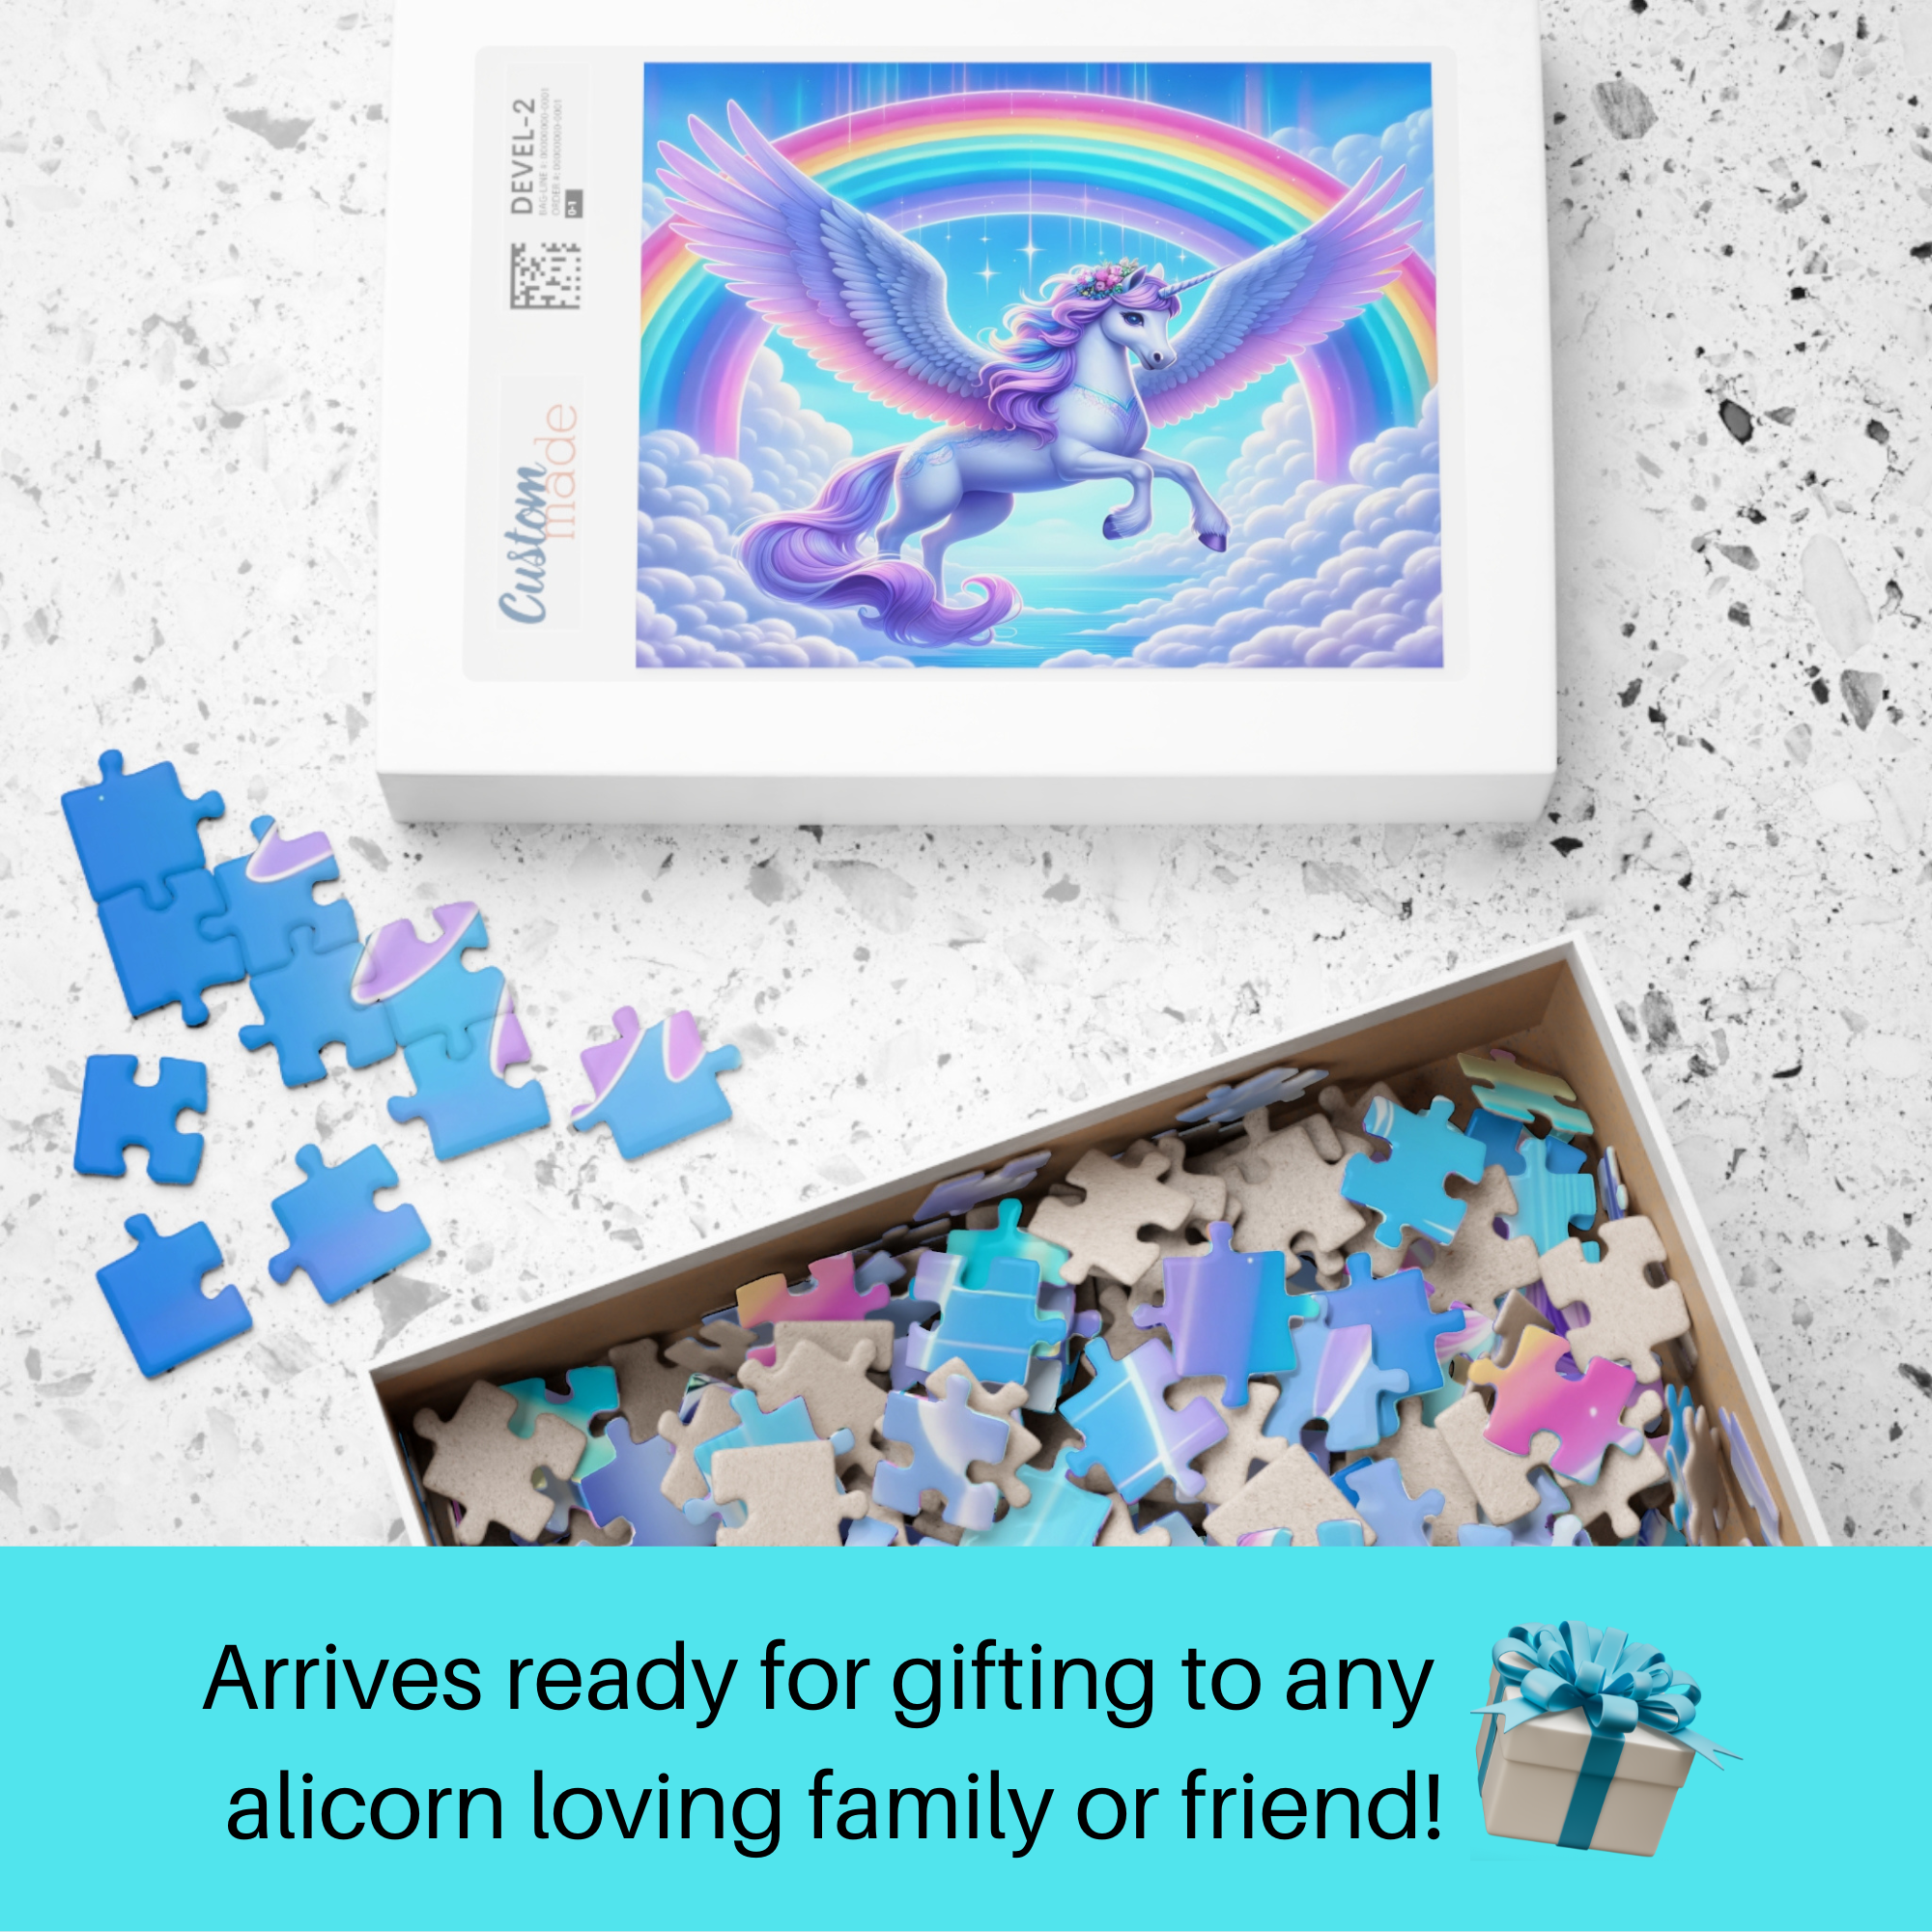 Alicorn Rainbow Puzzle | 110, 520 Piece